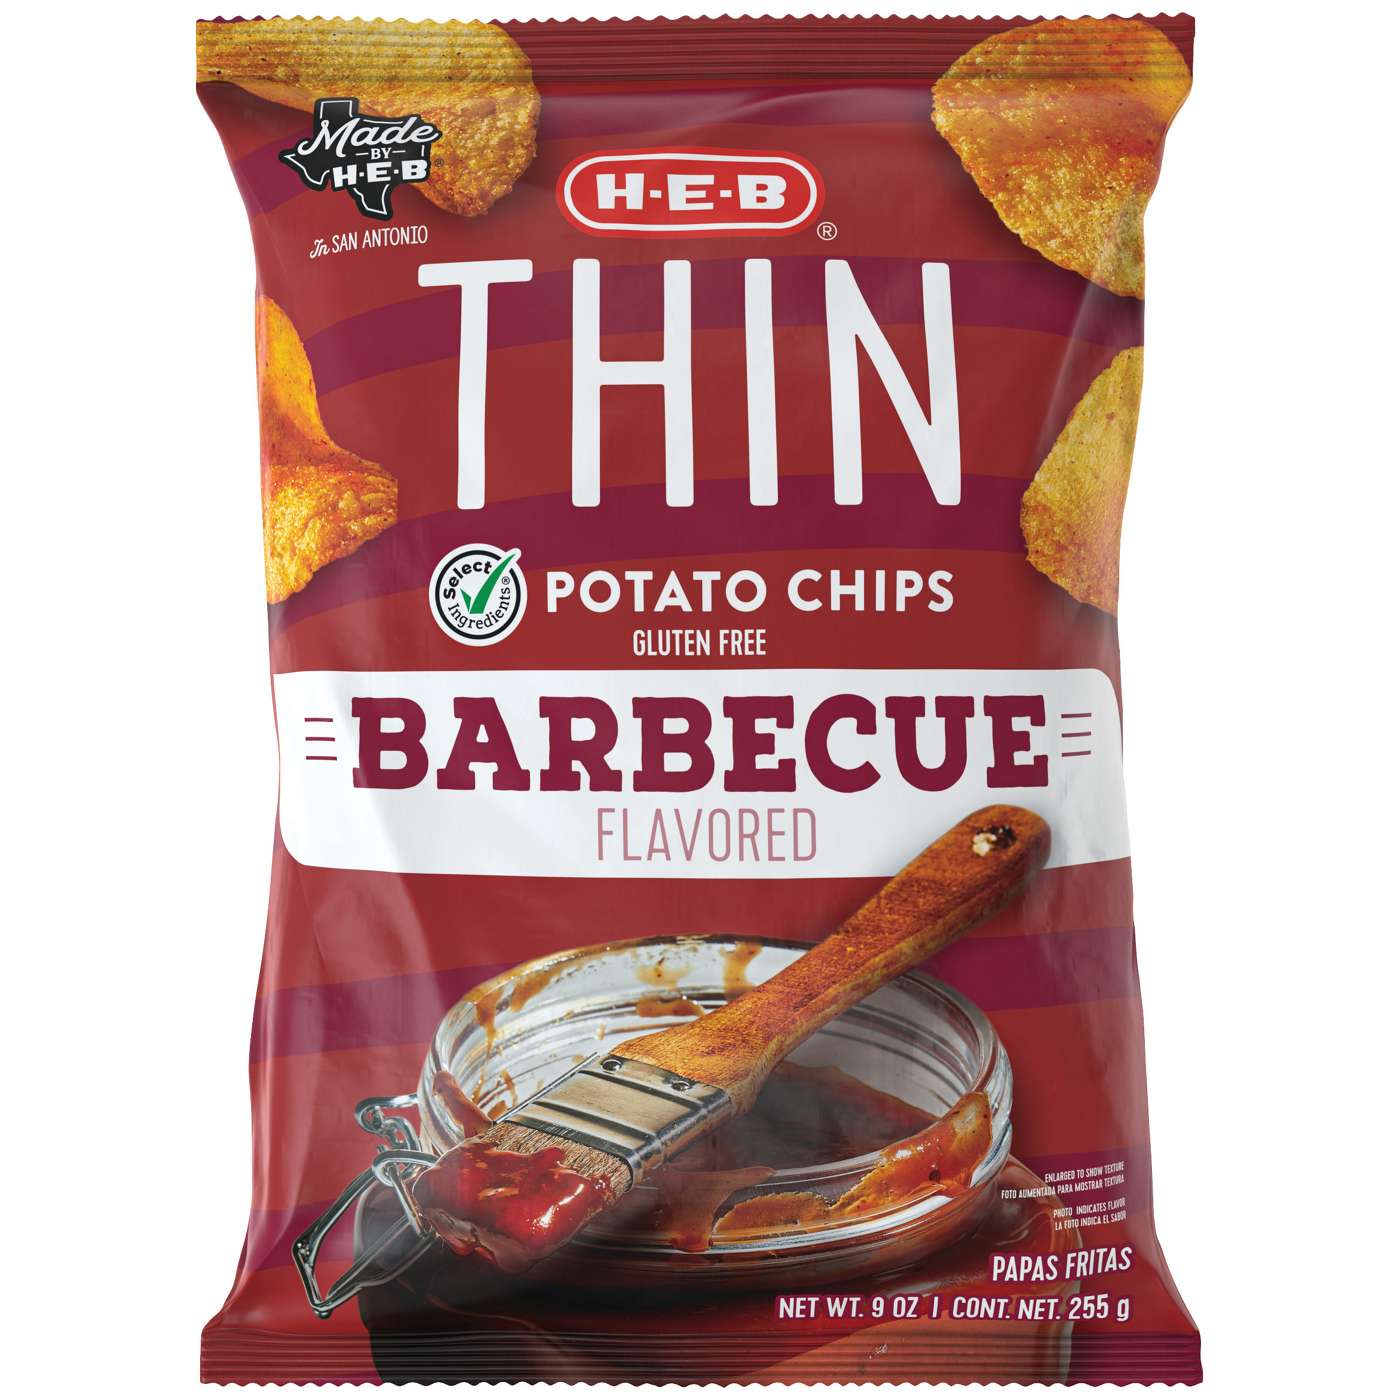 H-E-B Thin Potato Chips - Barbecue; image 1 of 2